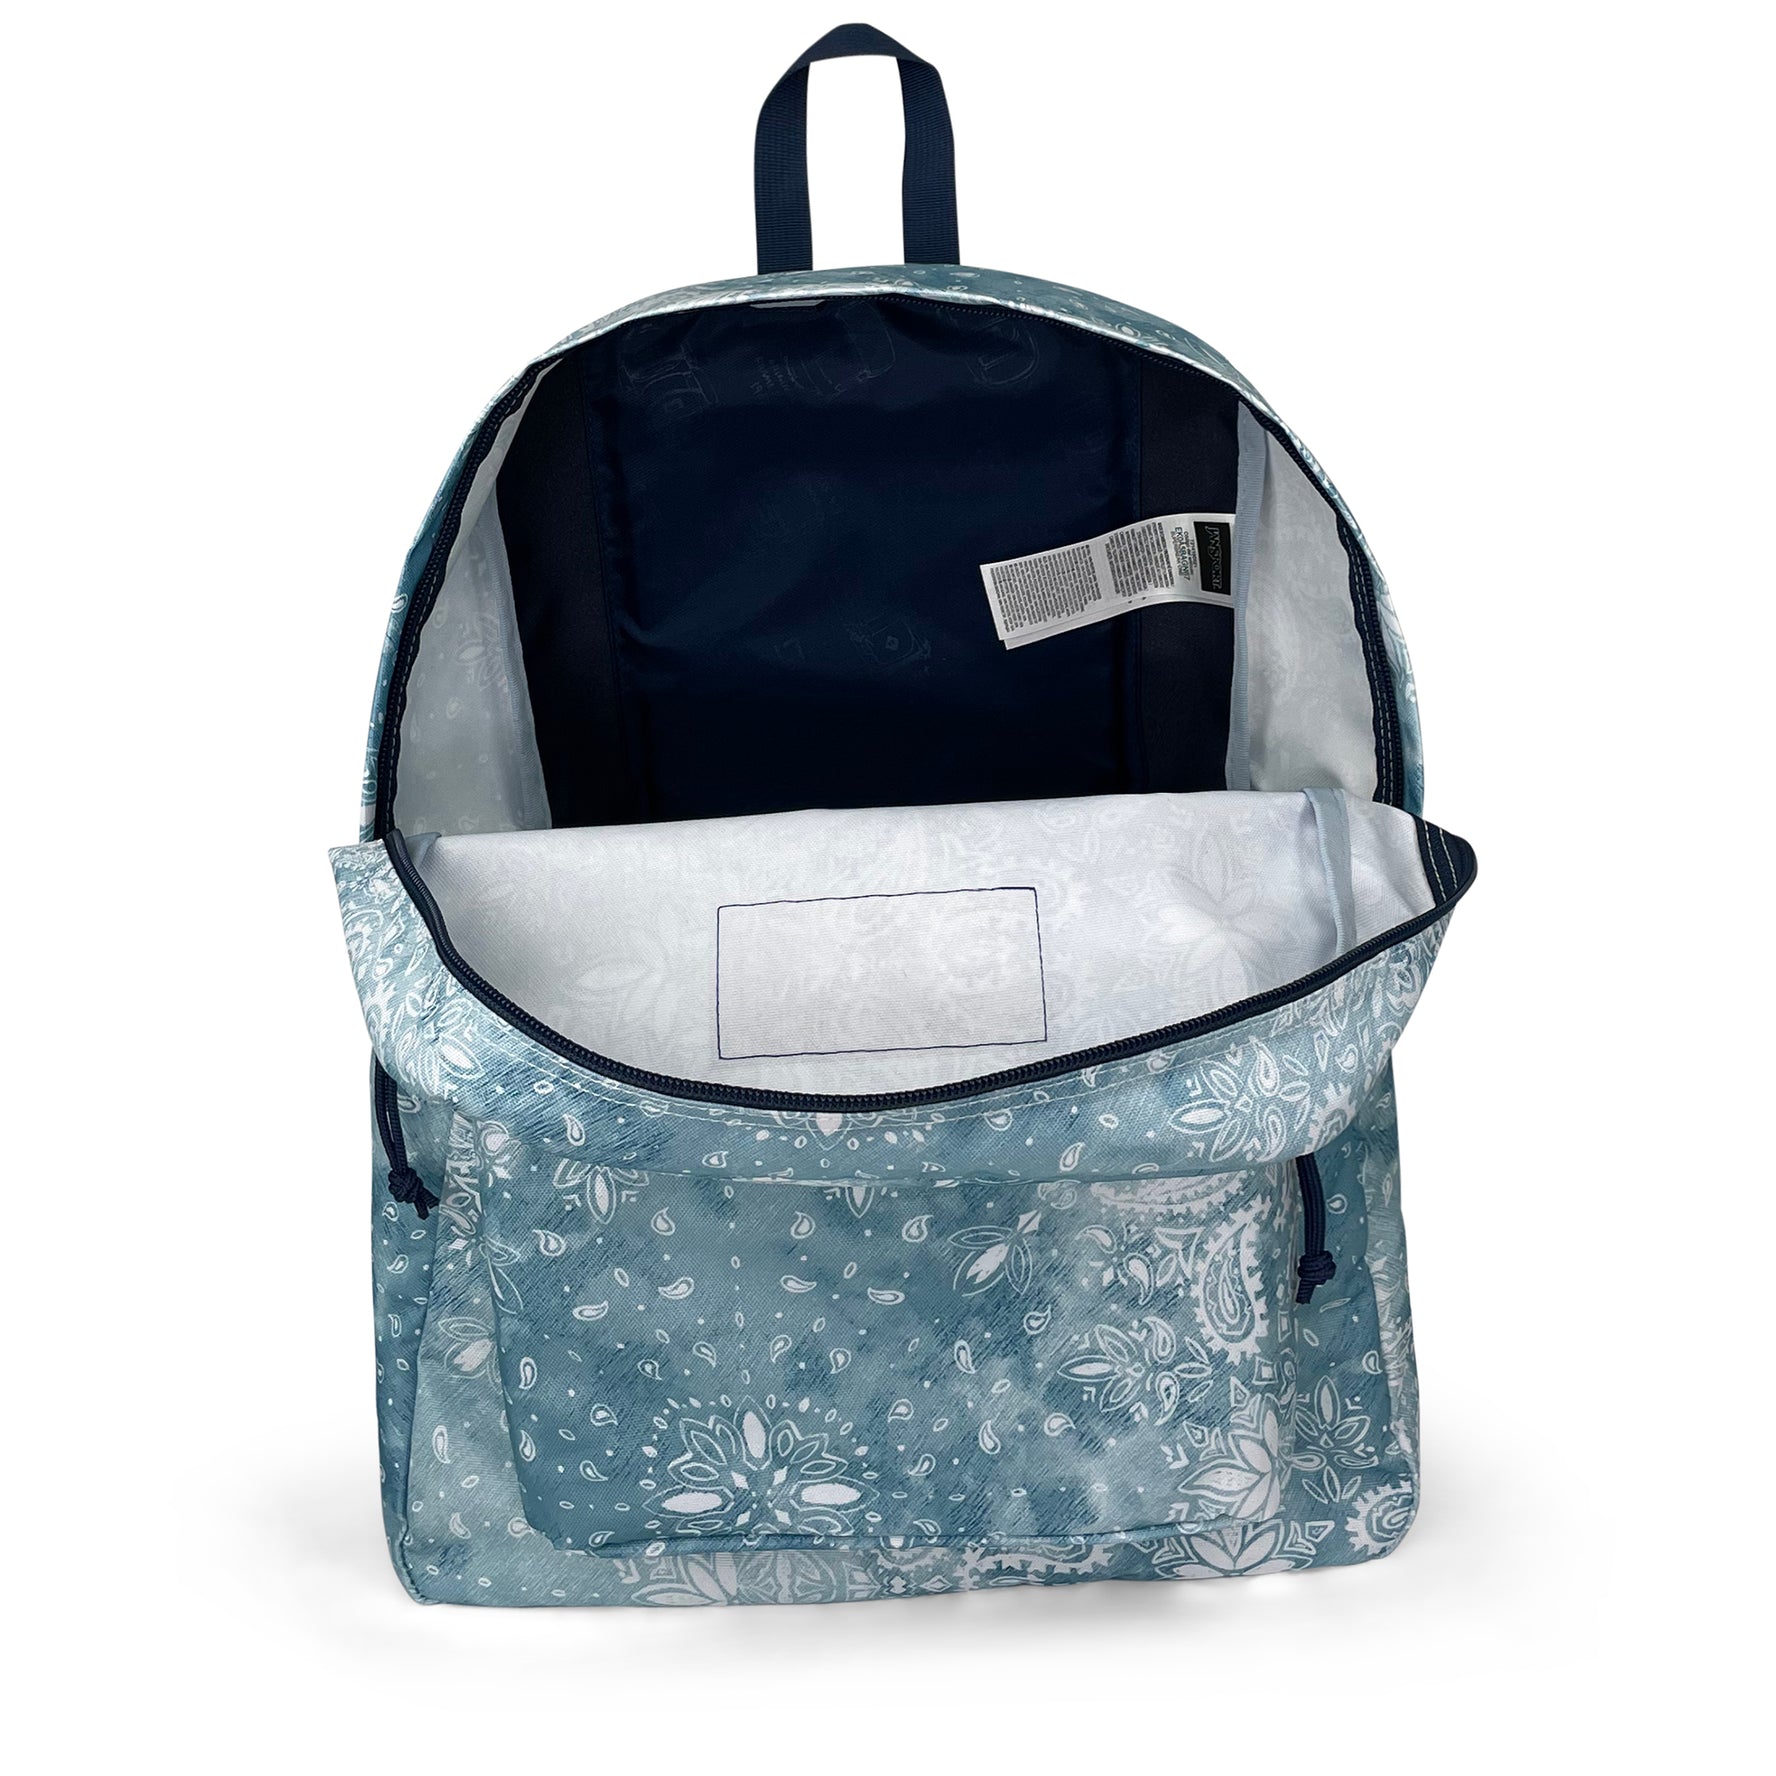 Superbreak One Backpack-Backpack-Jansport-Lucky Bandanna-SchoolBagsAndStuff